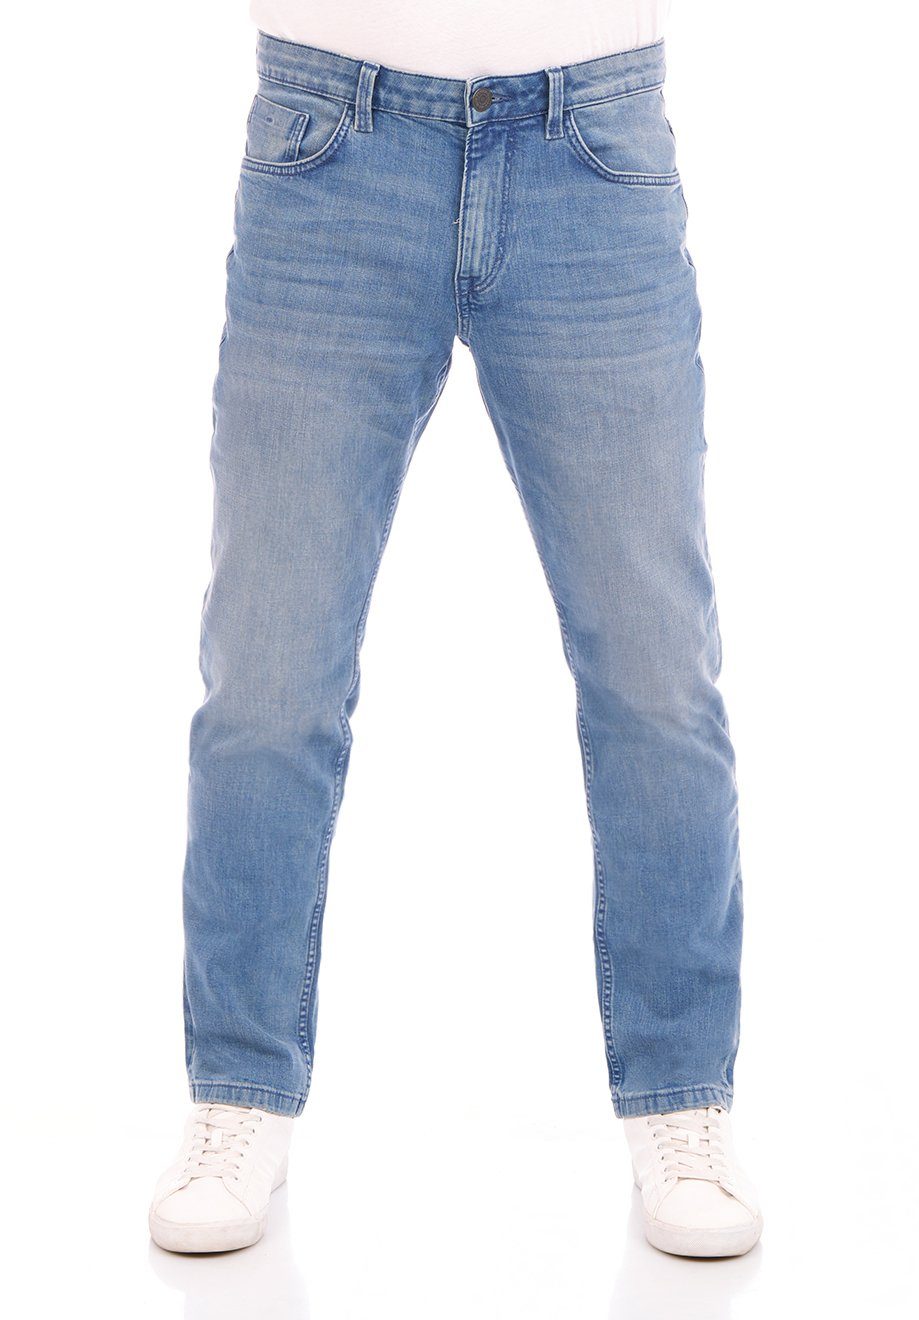 TOM TAILOR Straight-Jeans Herren Jeanshose Marvin Regular Fit Denim Hose mit Stretch Light Stone Blue Denim (10142)